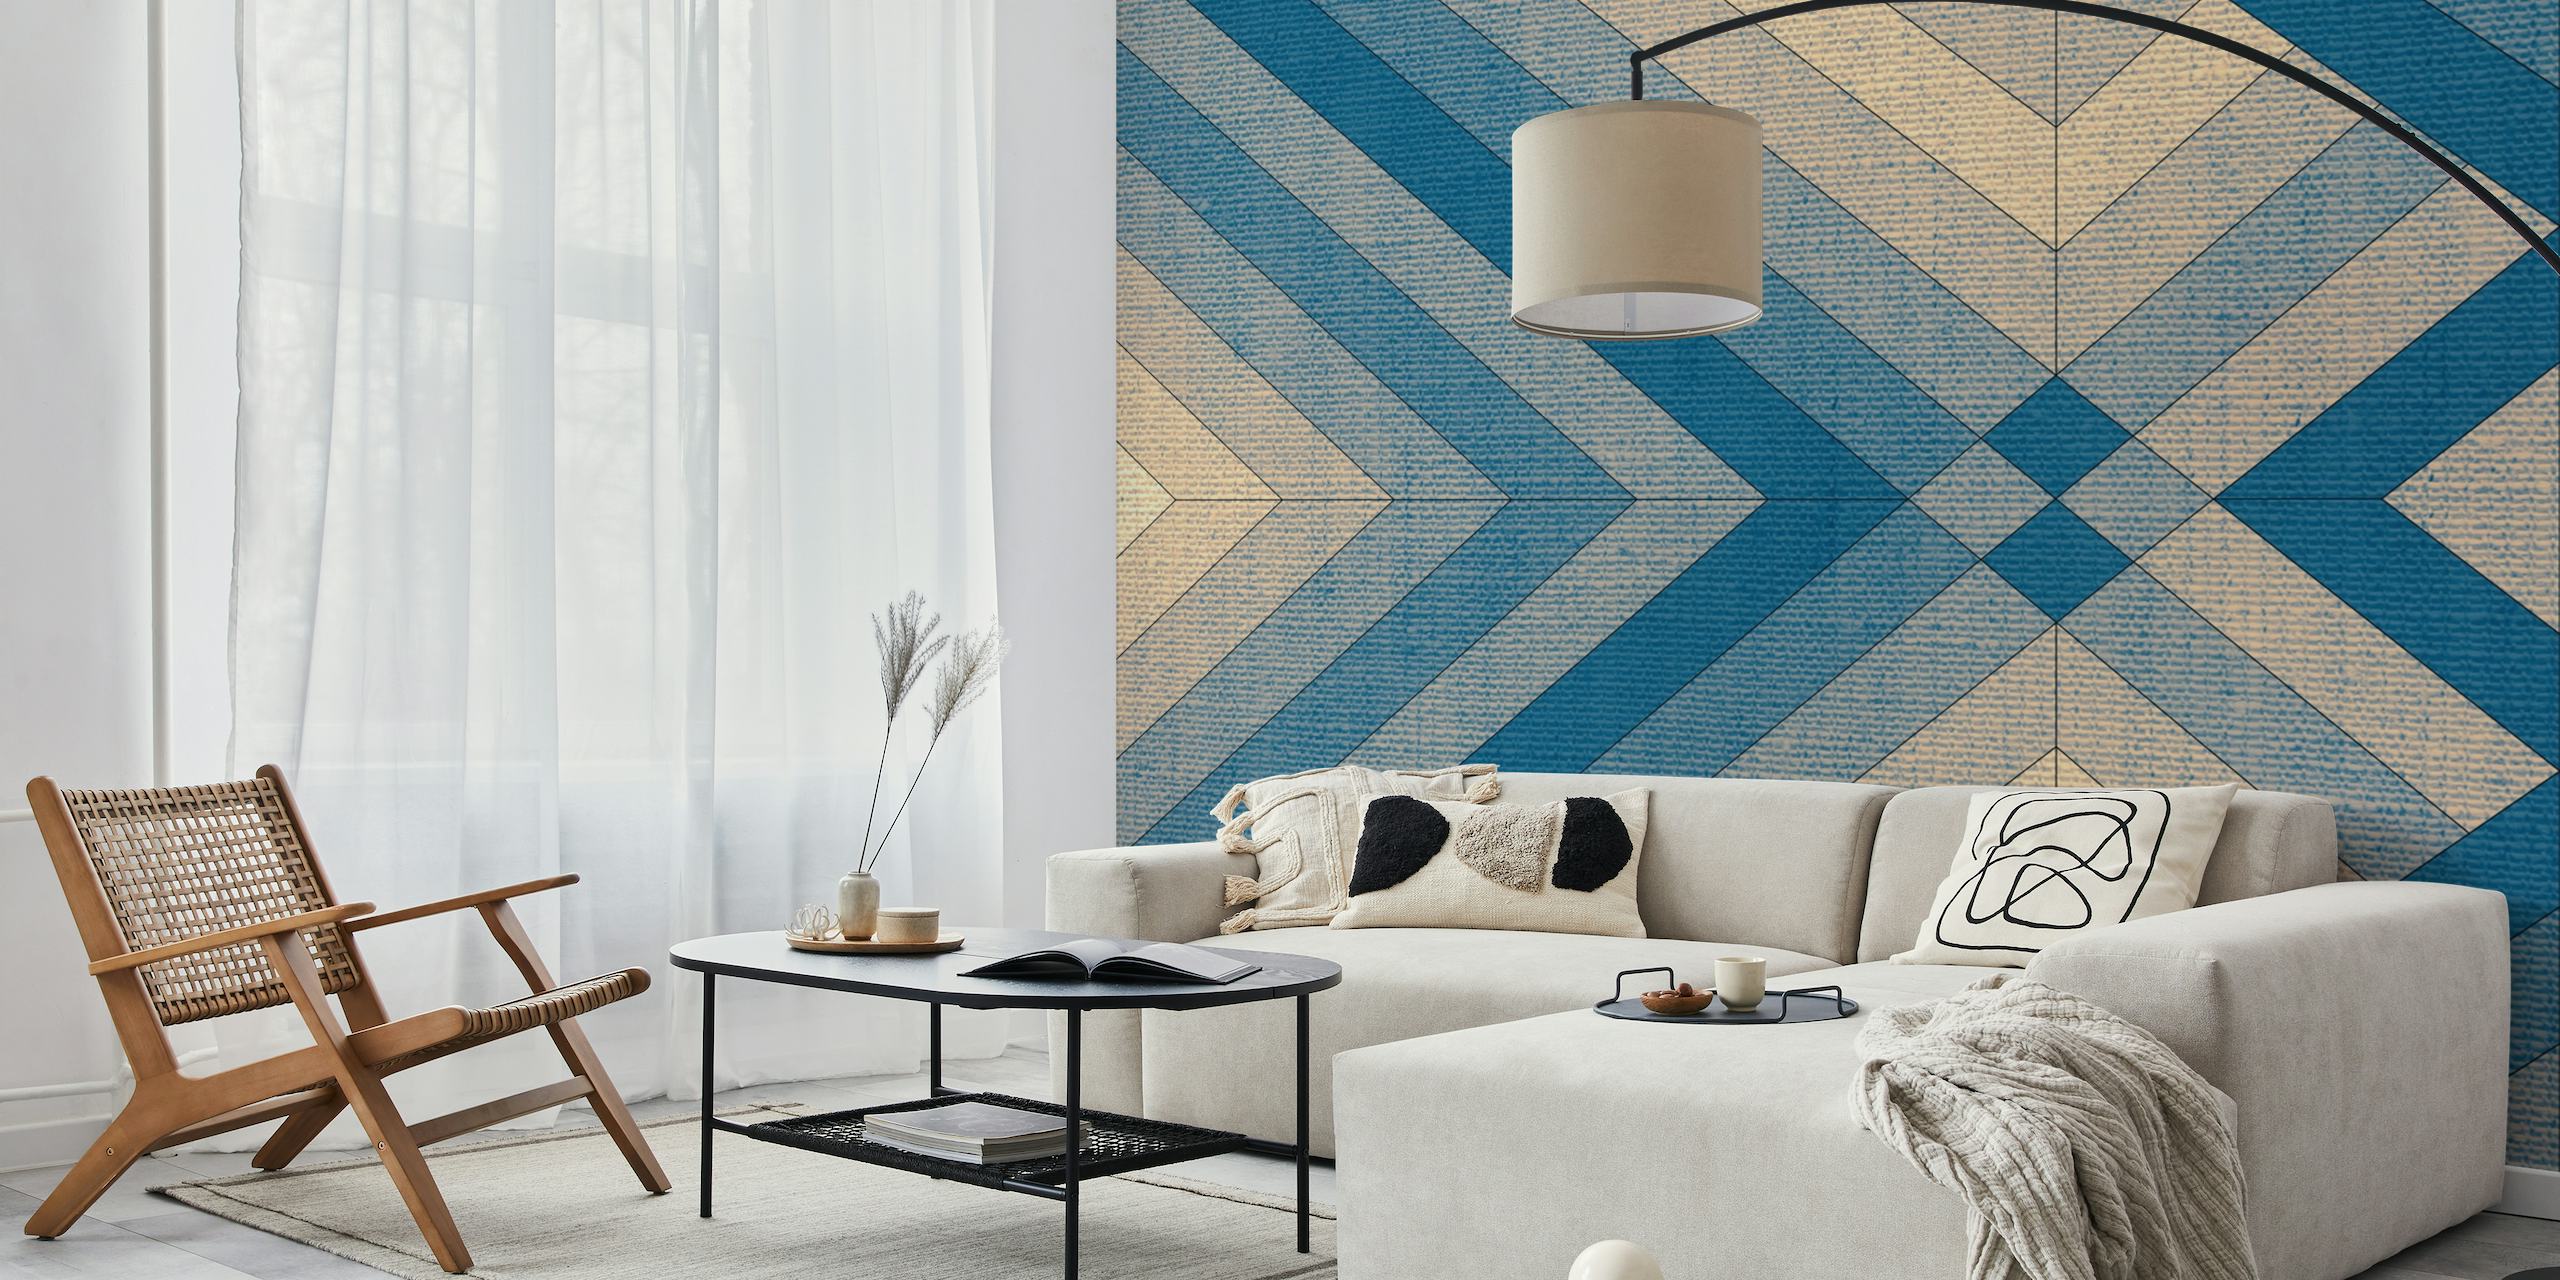 Veggmaleri med geometrisk mønster med tekstillignende tekstur i nyanser av blått og beige